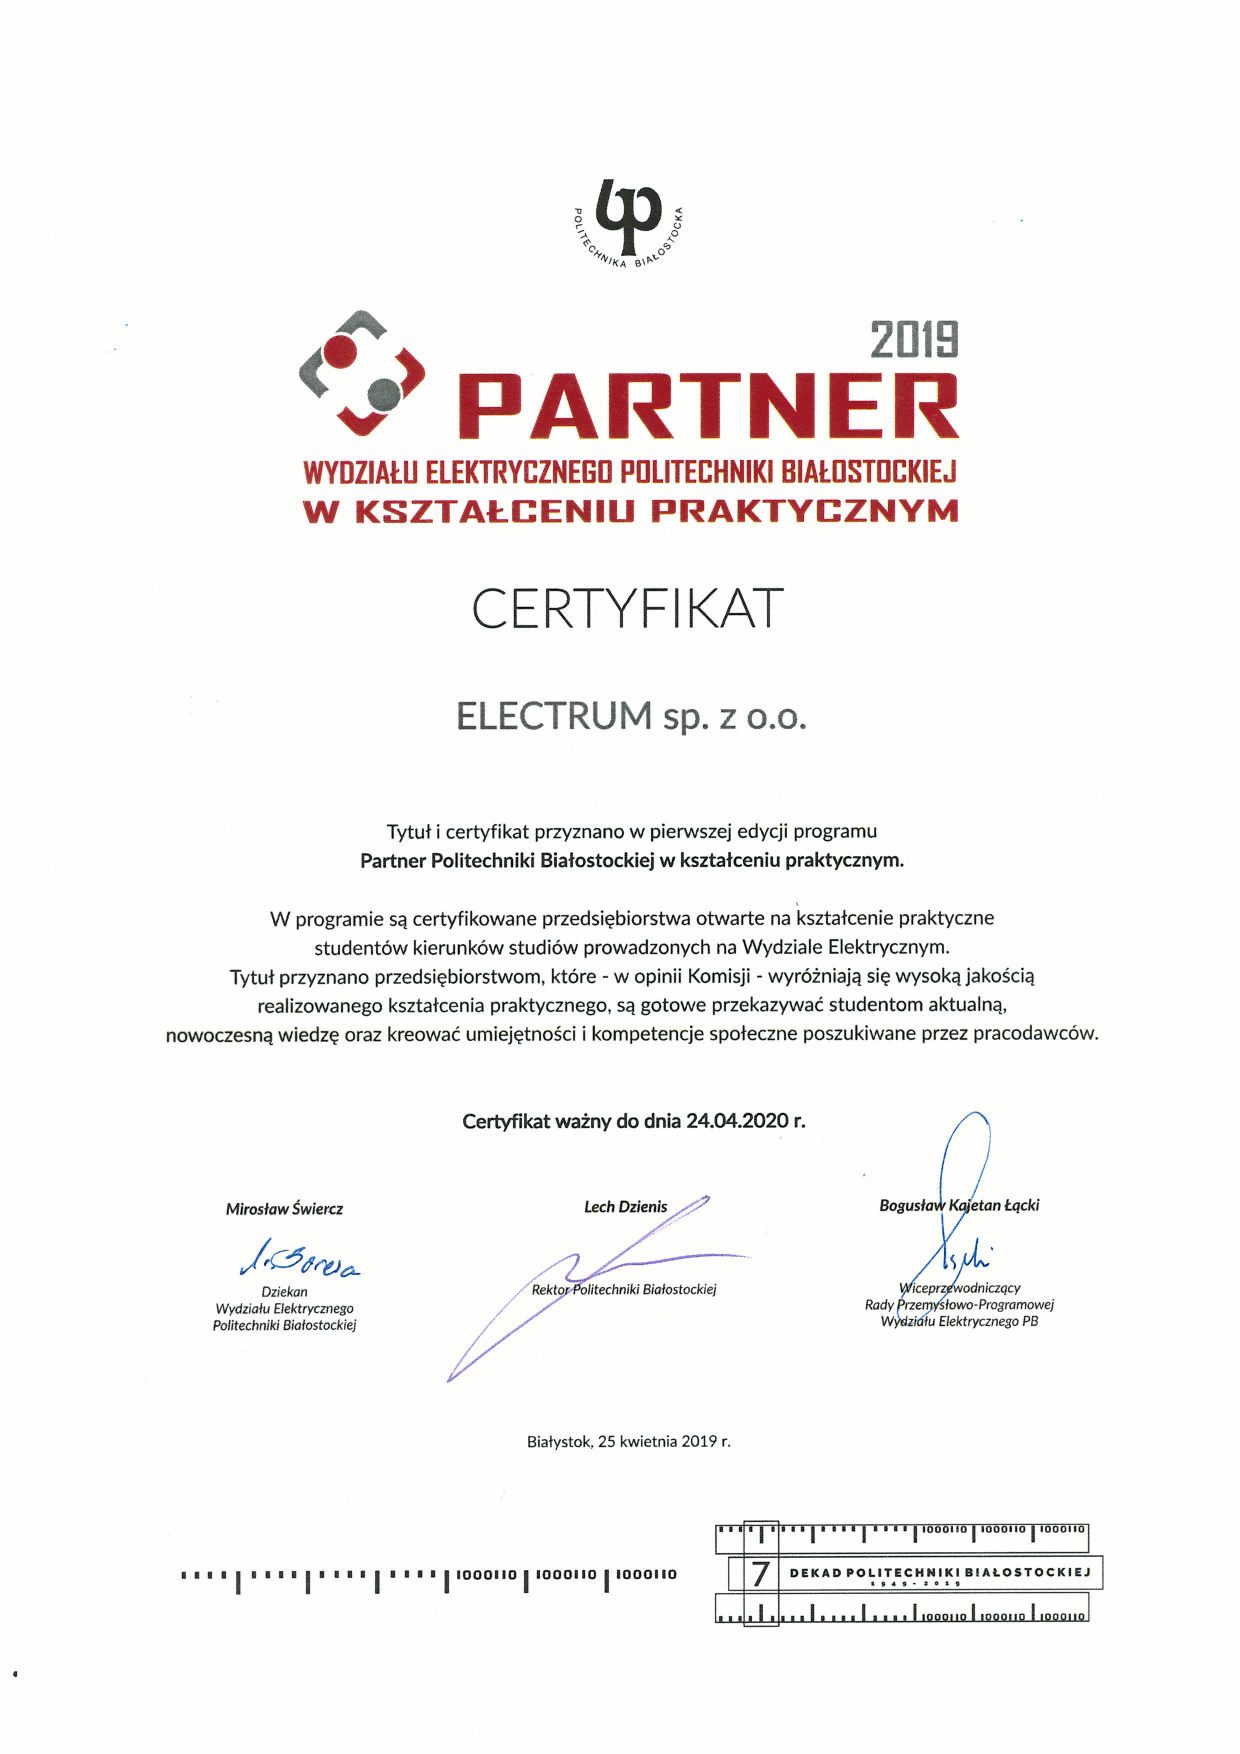 Certyfikat Partnera w kształceniu praktycznym - Electrum sp. z o.o.